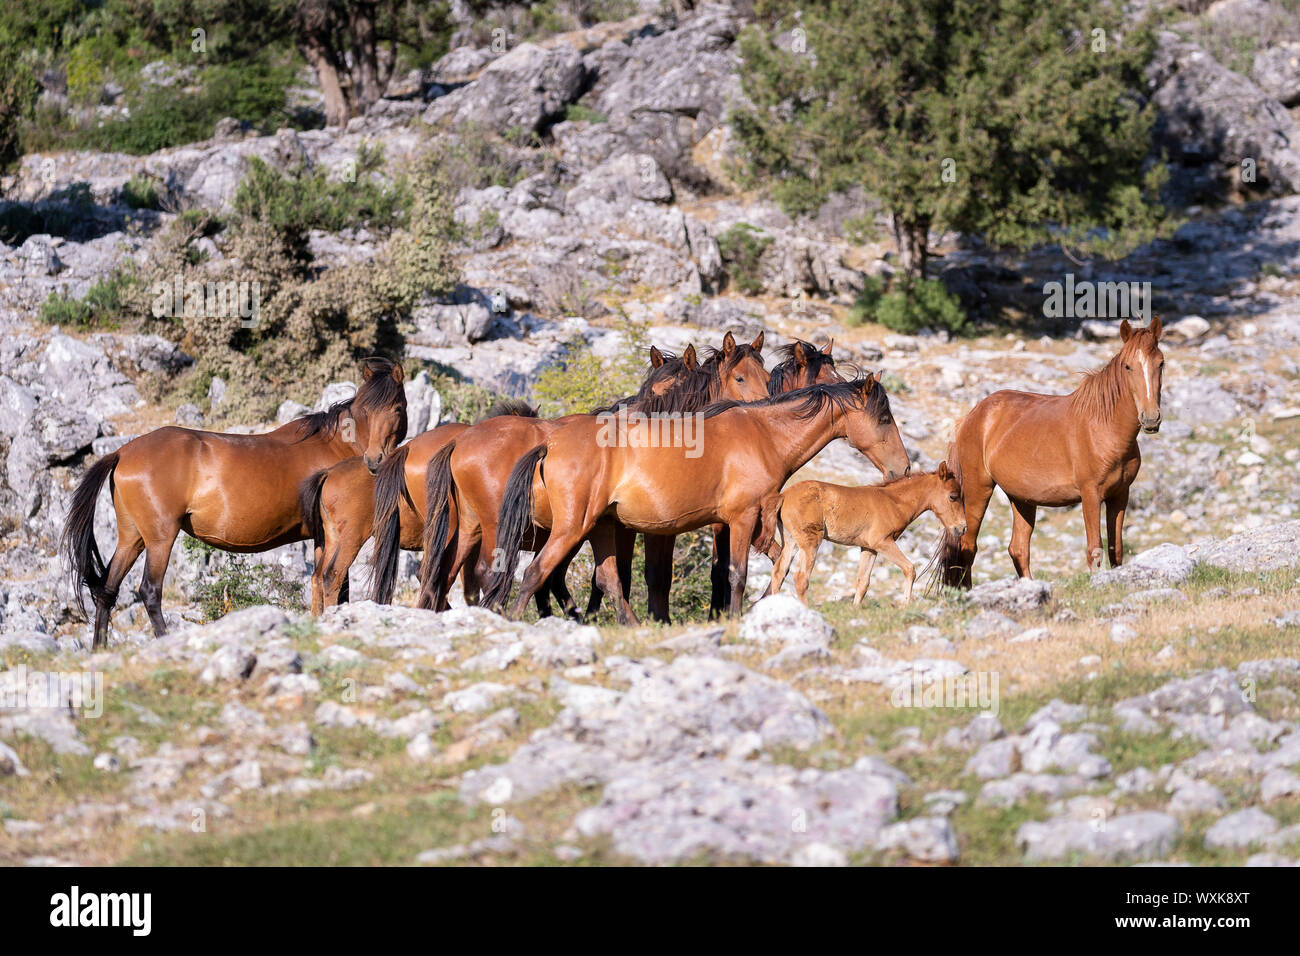 Wild horse, chevaux sauvages. Troupeau de juments poulain debout dans paysage. La Turquie Banque D'Images